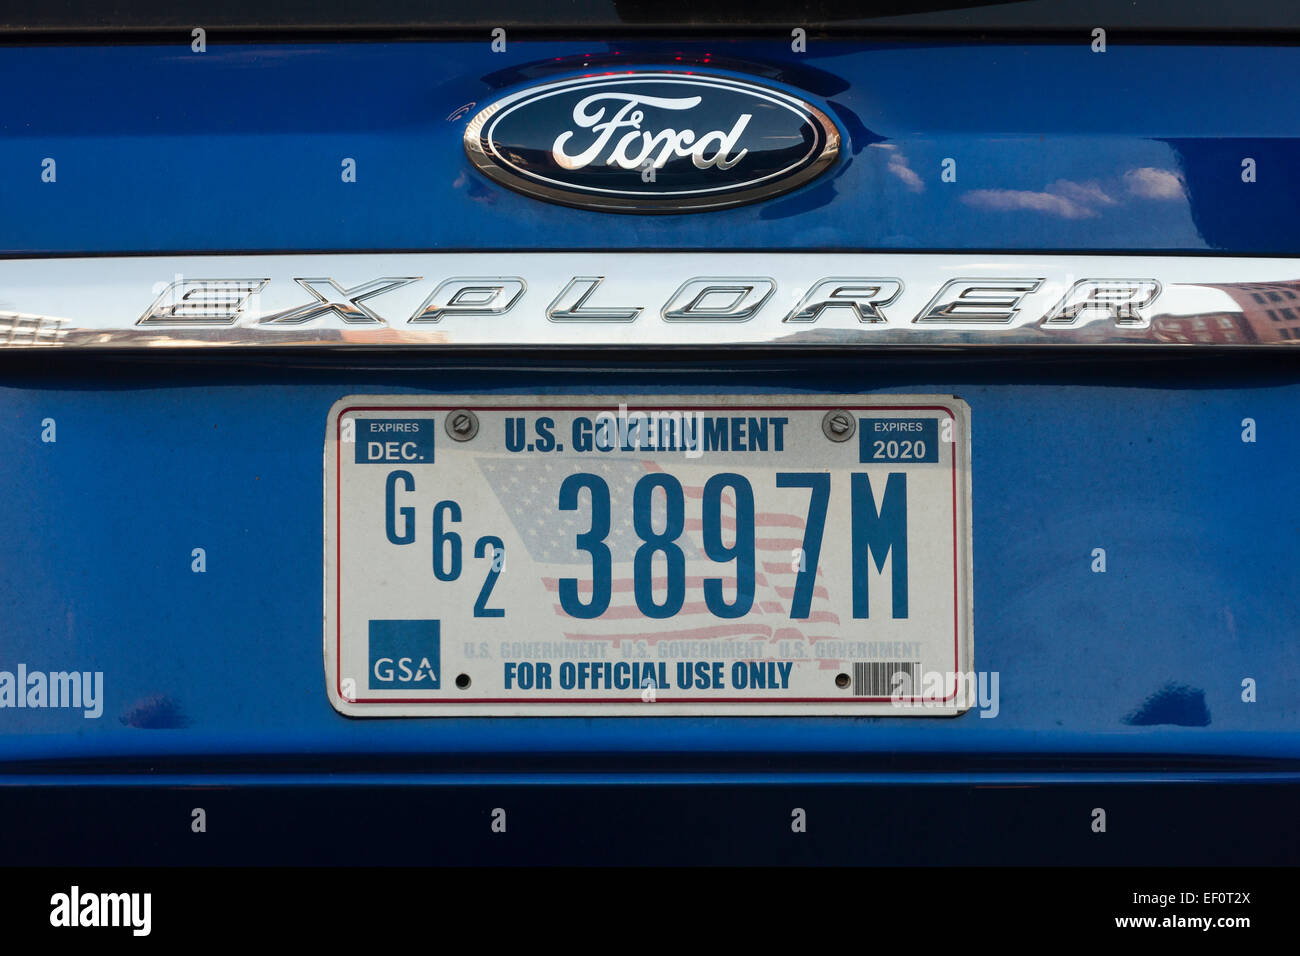 Offizielle US-Regierung Fahrzeug zugelassen Kfz-Kennzeichen - USA Stockfoto